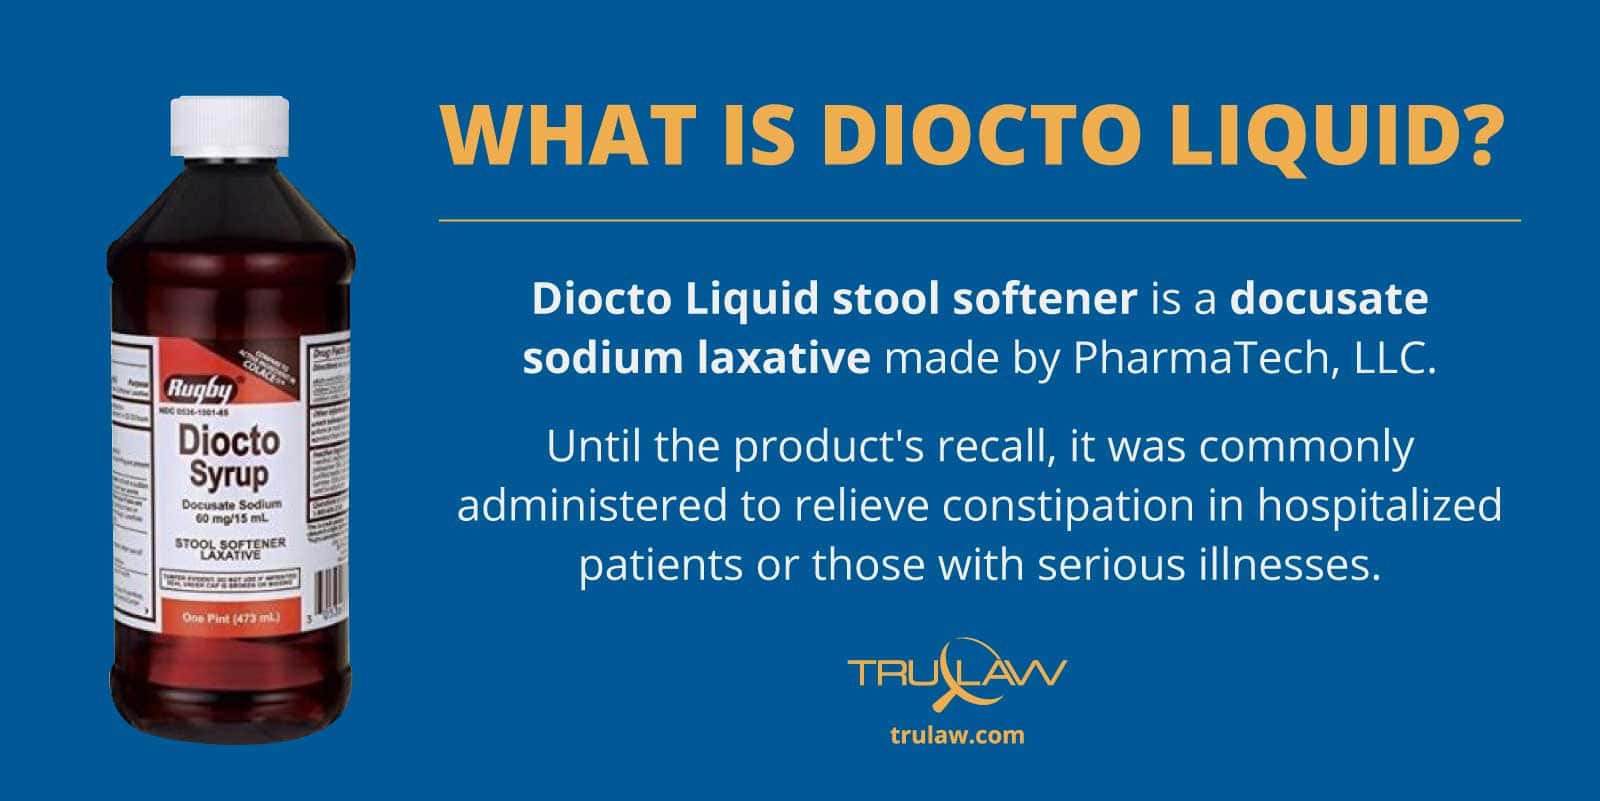 Diocto-Liquid-stool-softener-lawsuit